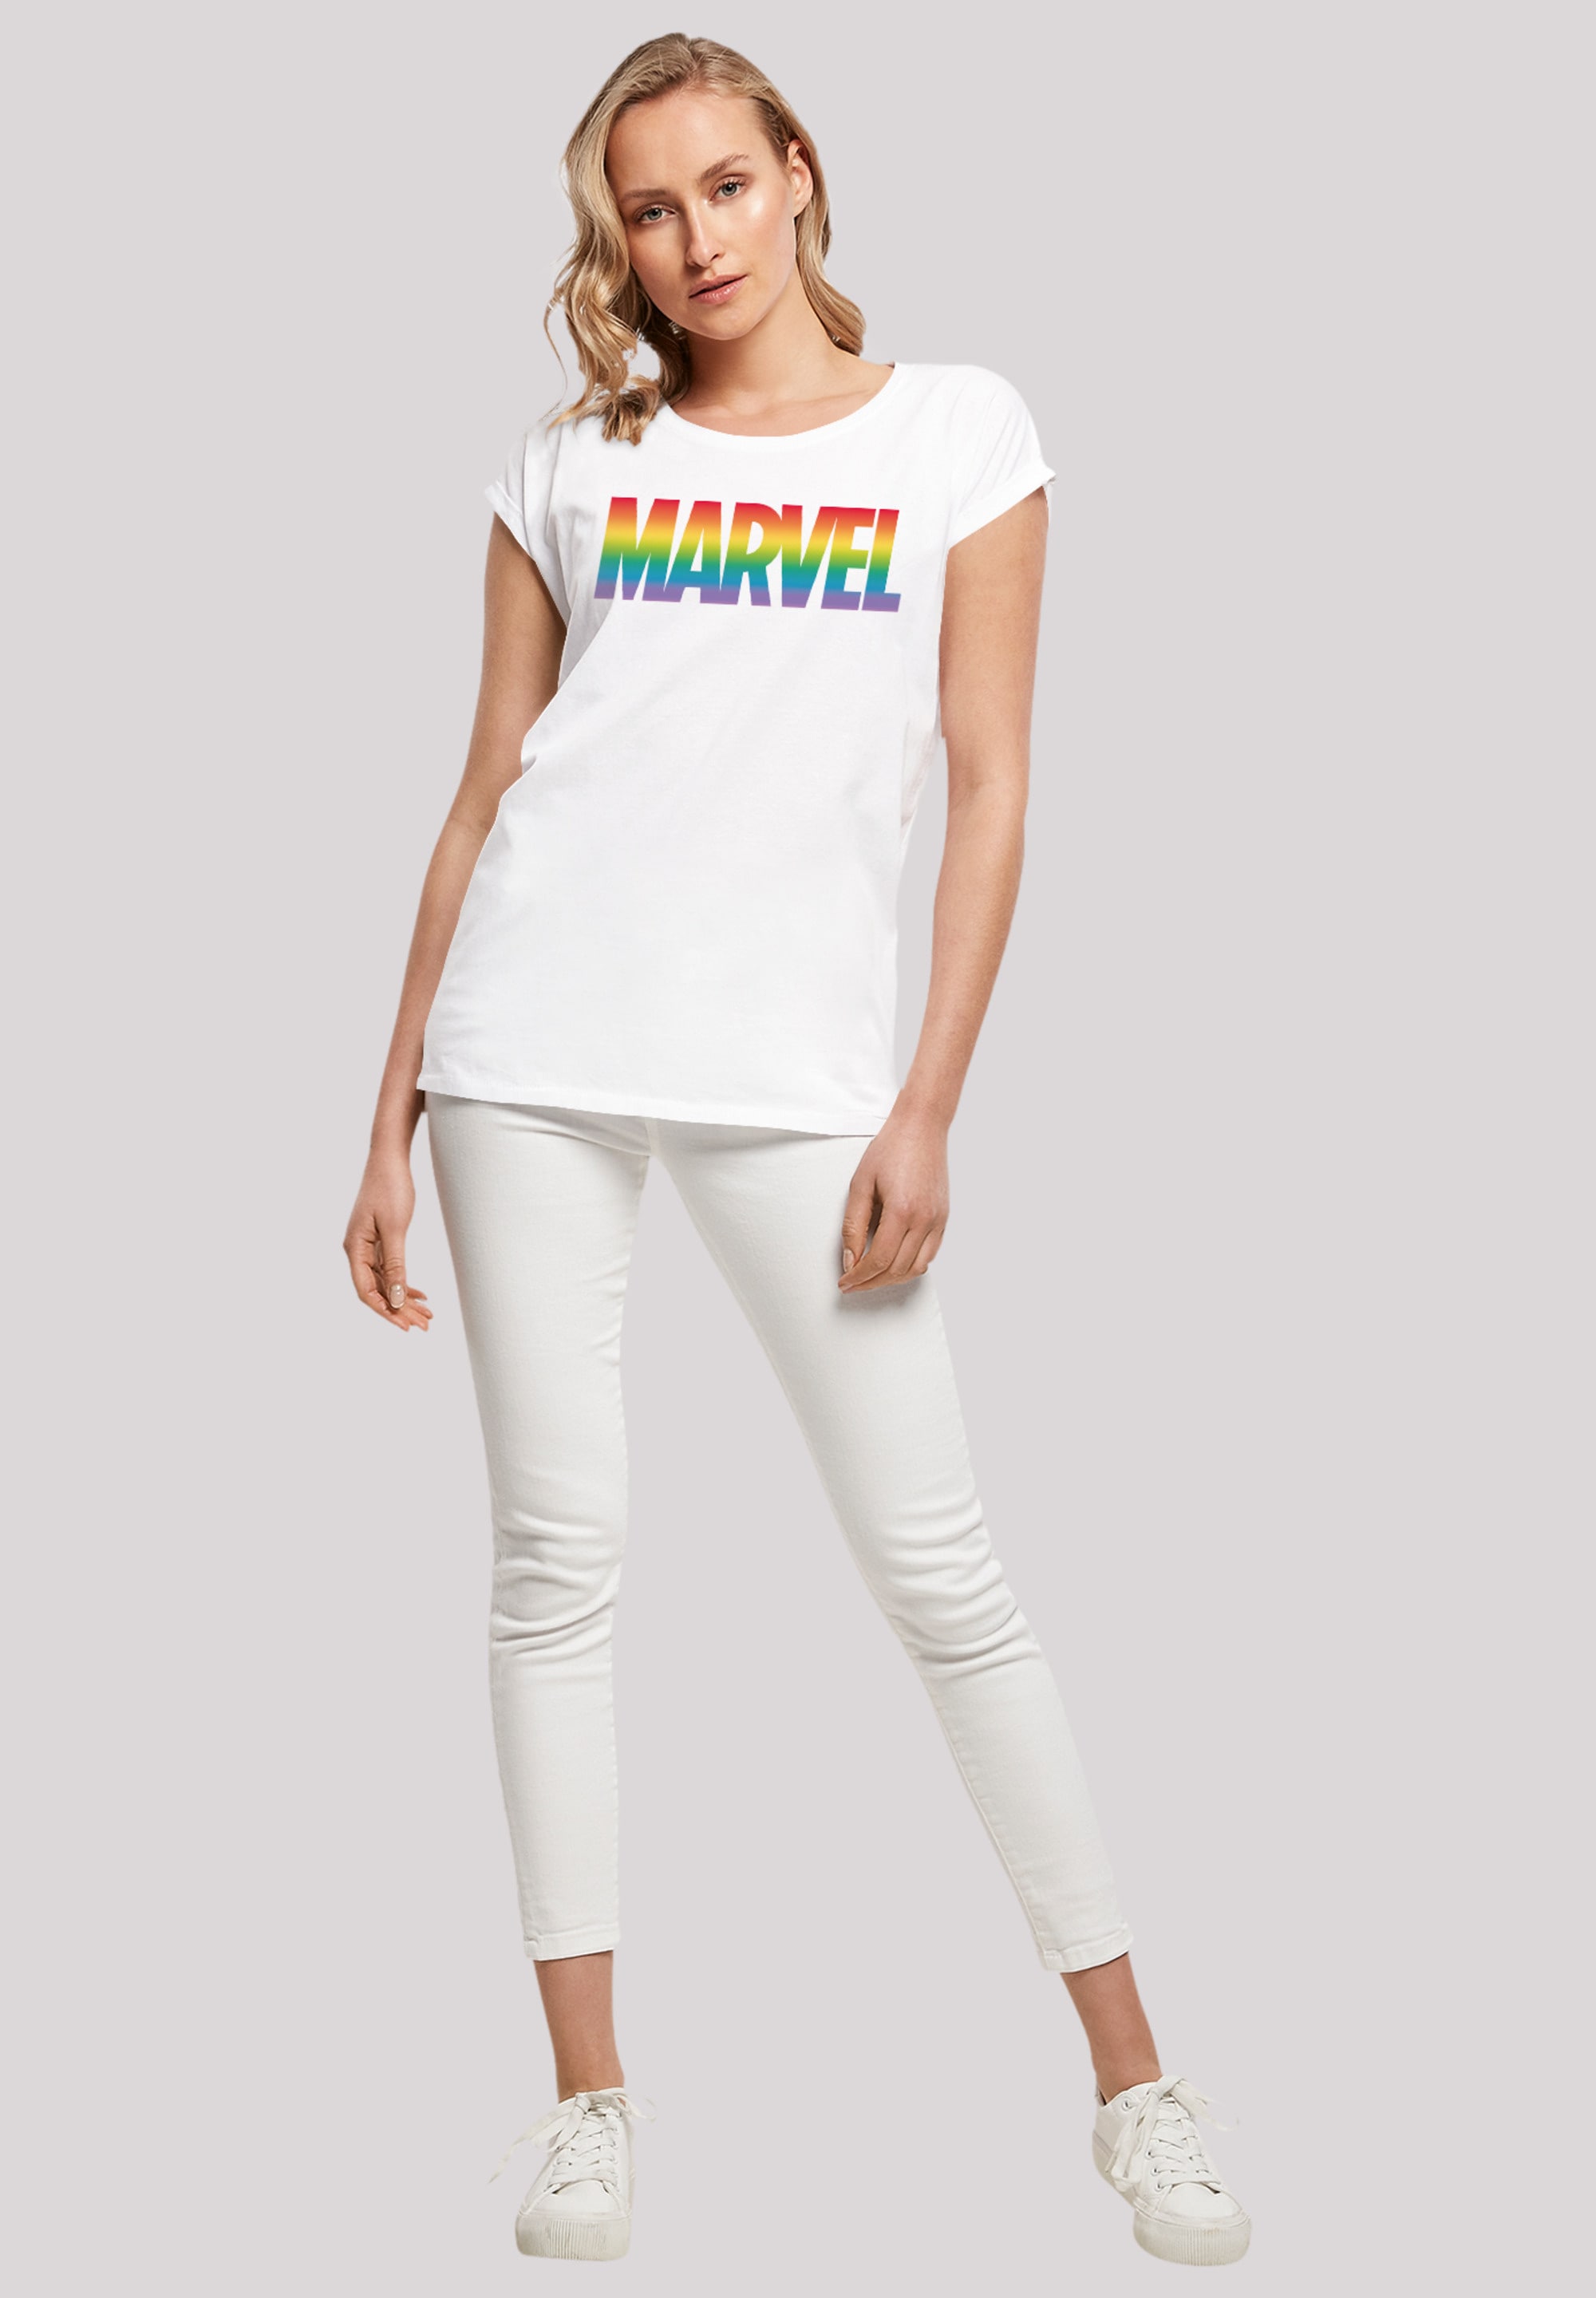 F4NT4STIC T-Shirt »Marvel Premium BAUR bestellen Qualität Pride«, 